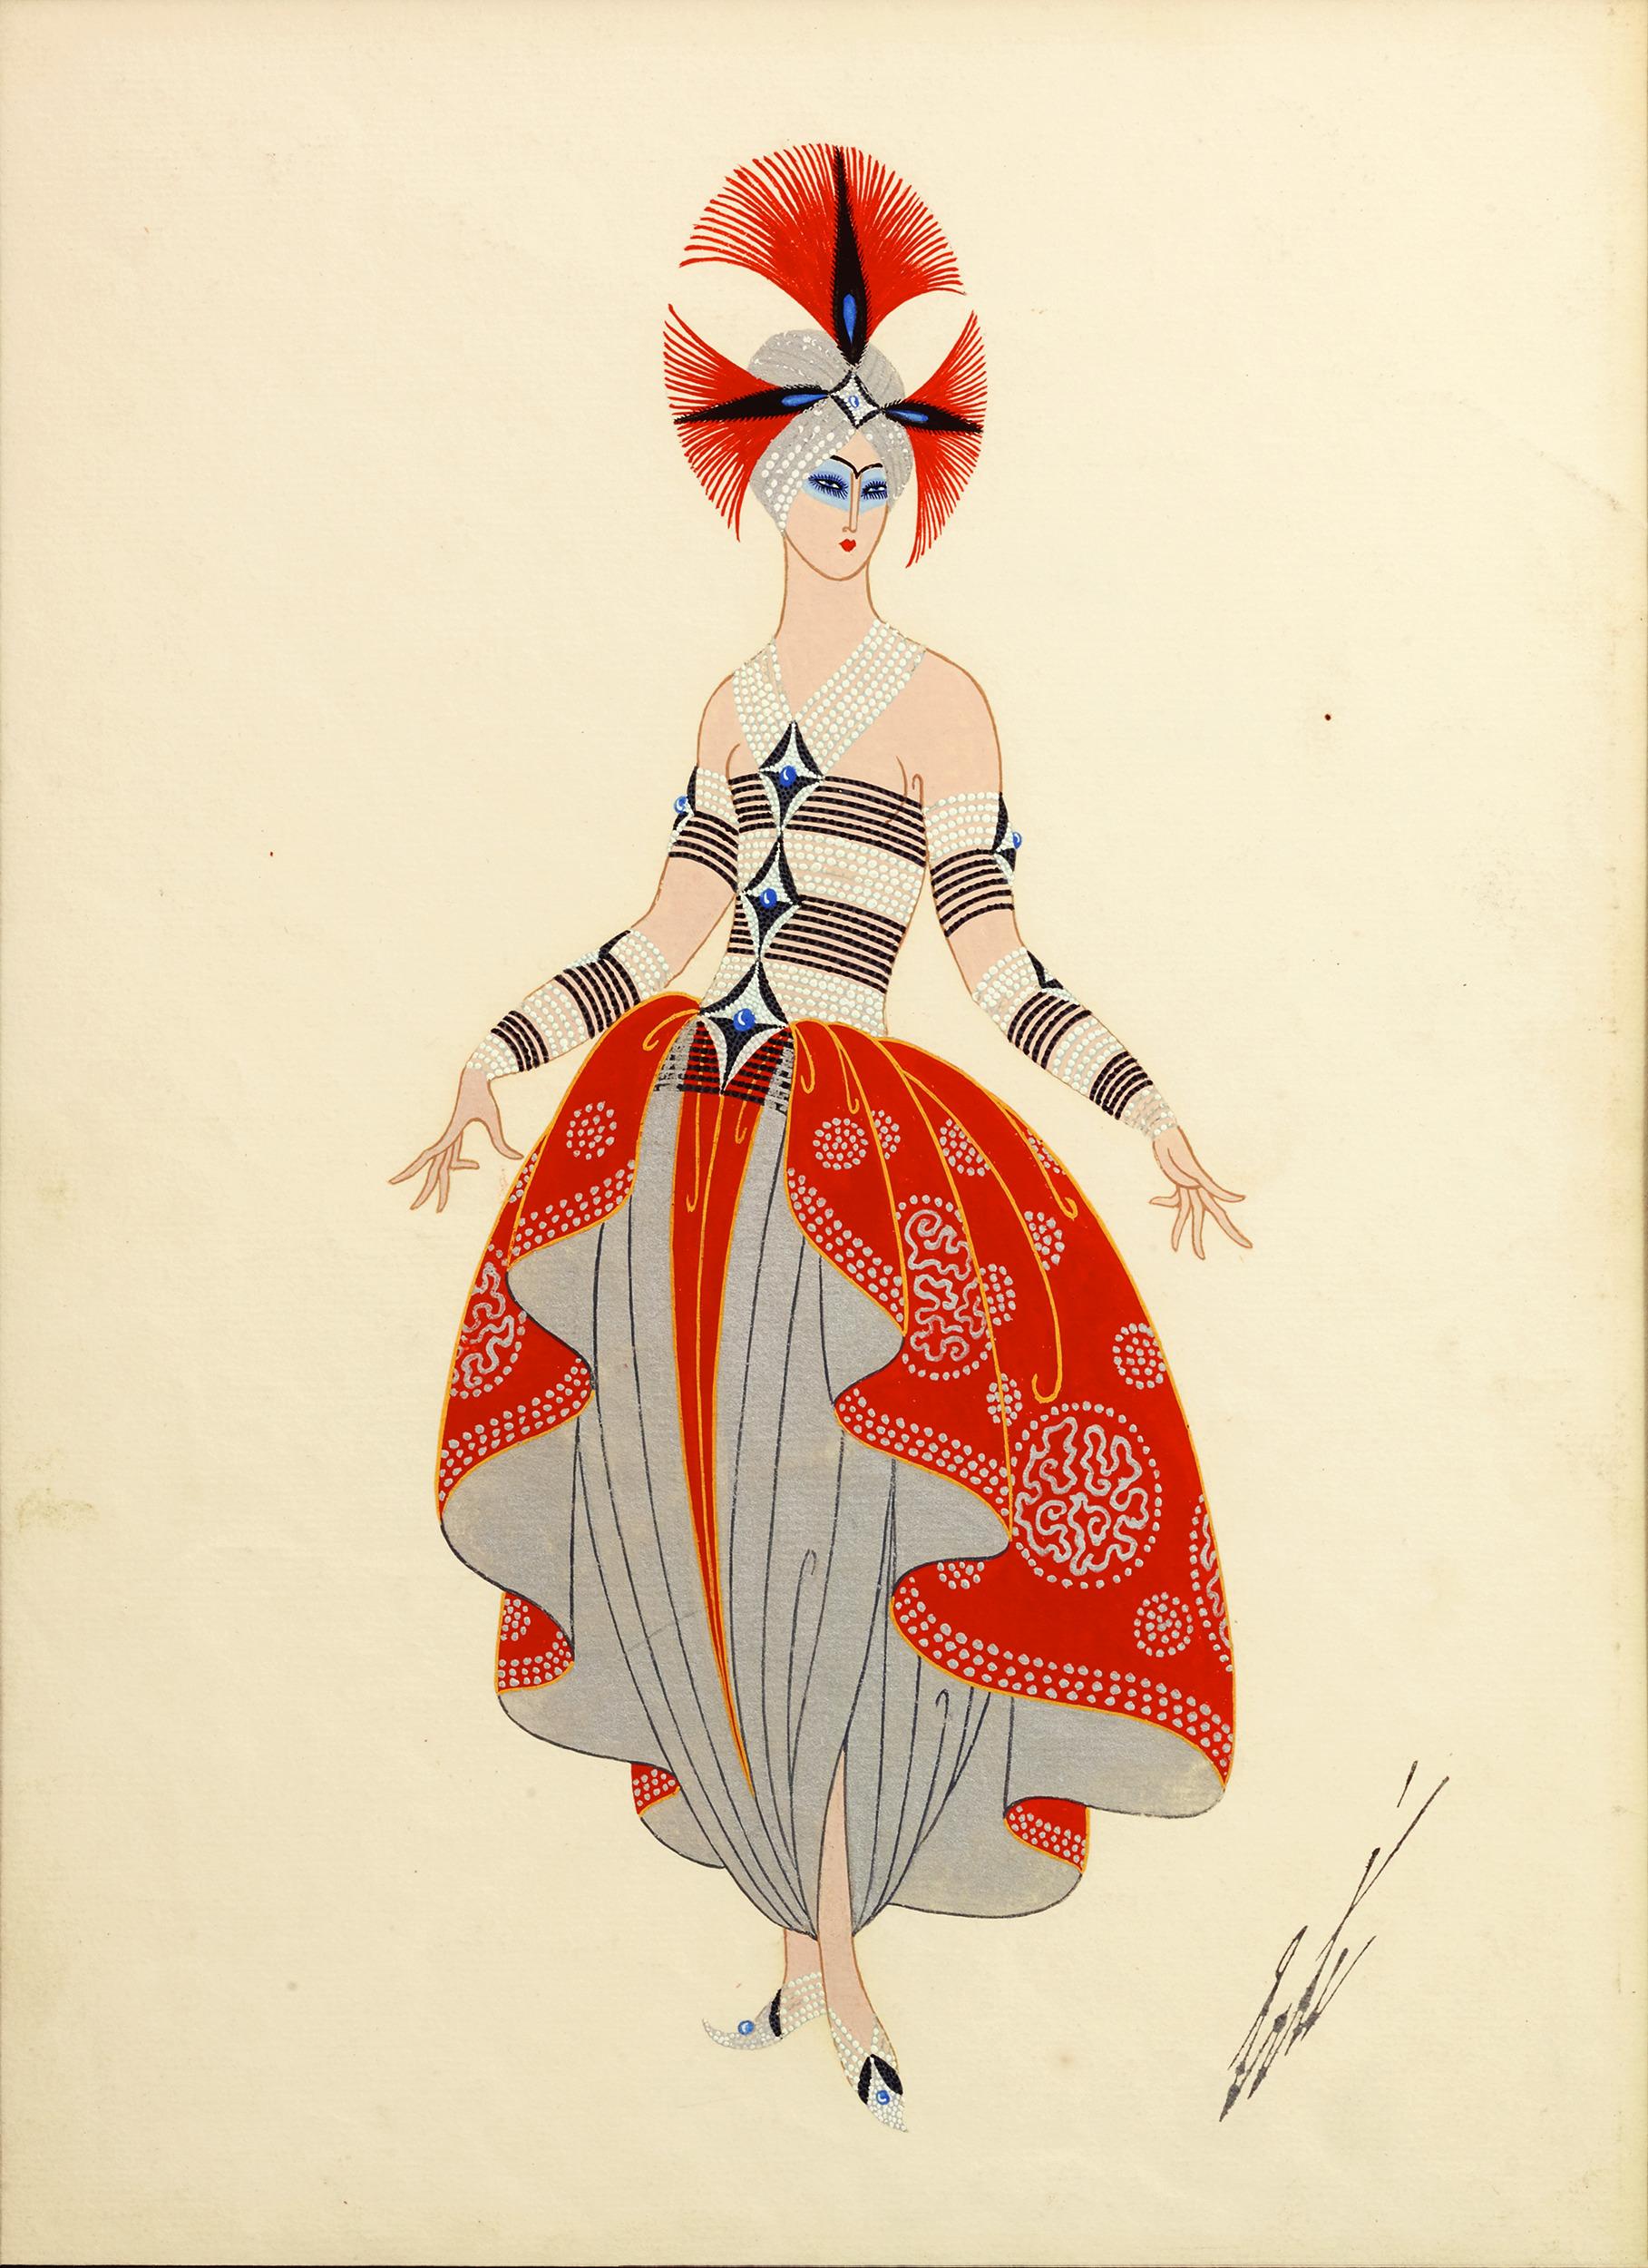 Erté (Romain de Tirtoff)
1892-1990  Russe-Français

Costume oriental

Signé 